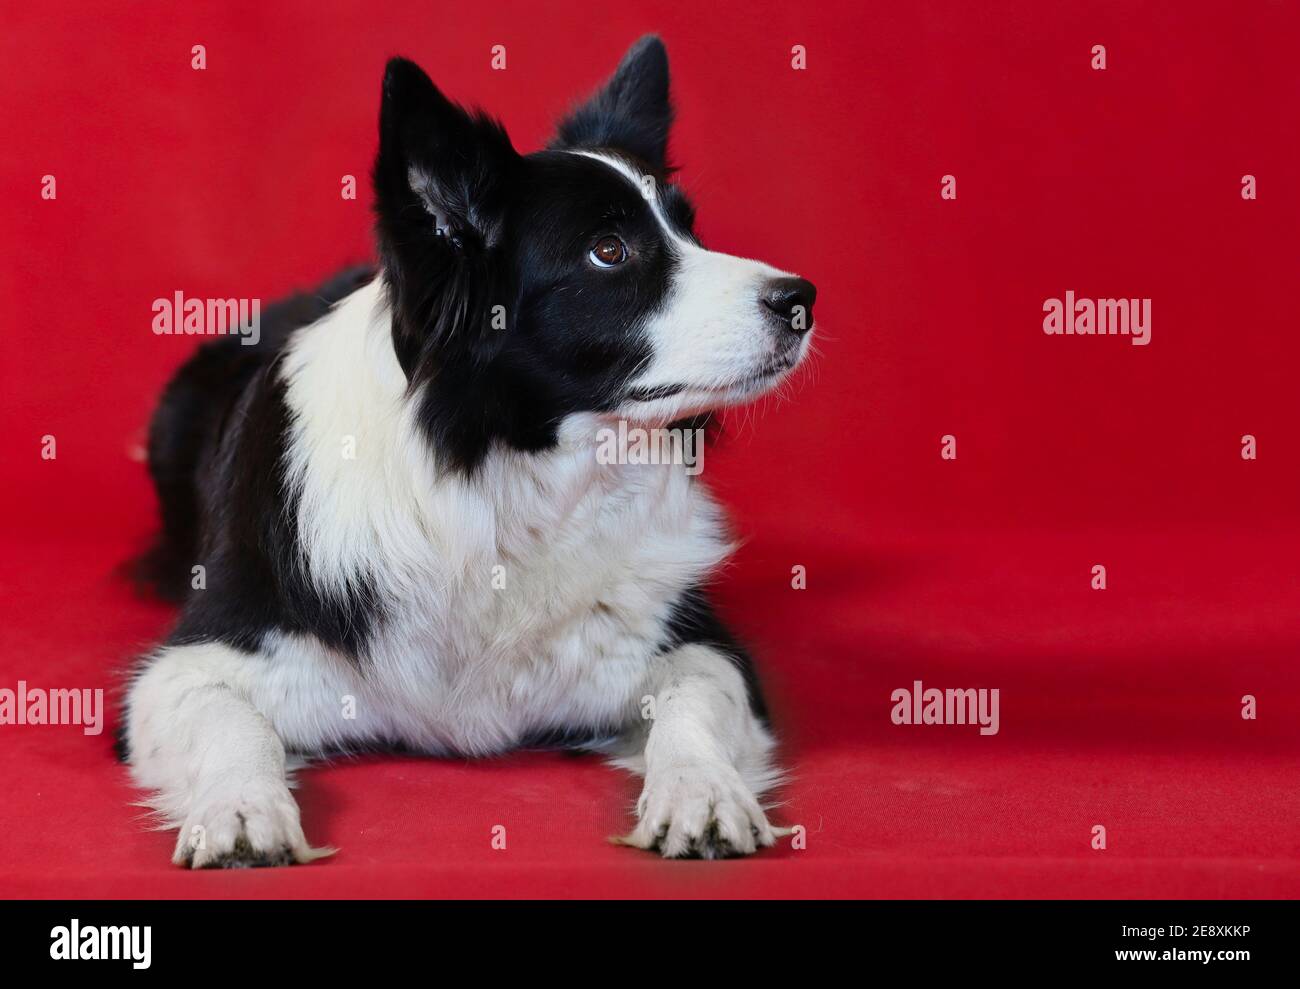 Liegende Grenze Collie isoliert auf rotem Hintergrund. Cute Black and White Dog sieht zur Seite. Stockfoto